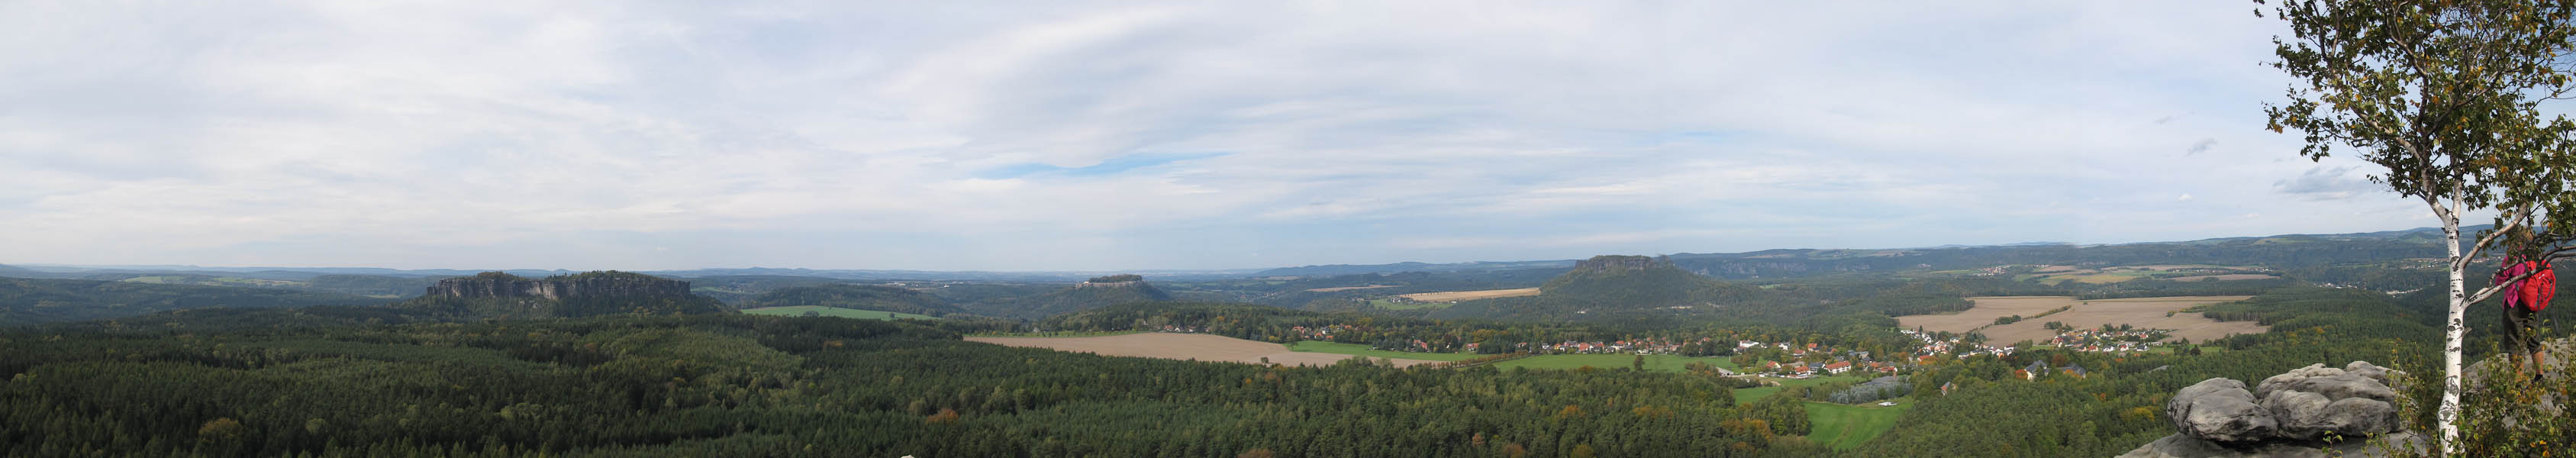 Das Panorama vom Pfaffenstein mit Barbarine, Quirl, K?nigstein, Lilienstein und dem Ort Gorisch ist gewaltig